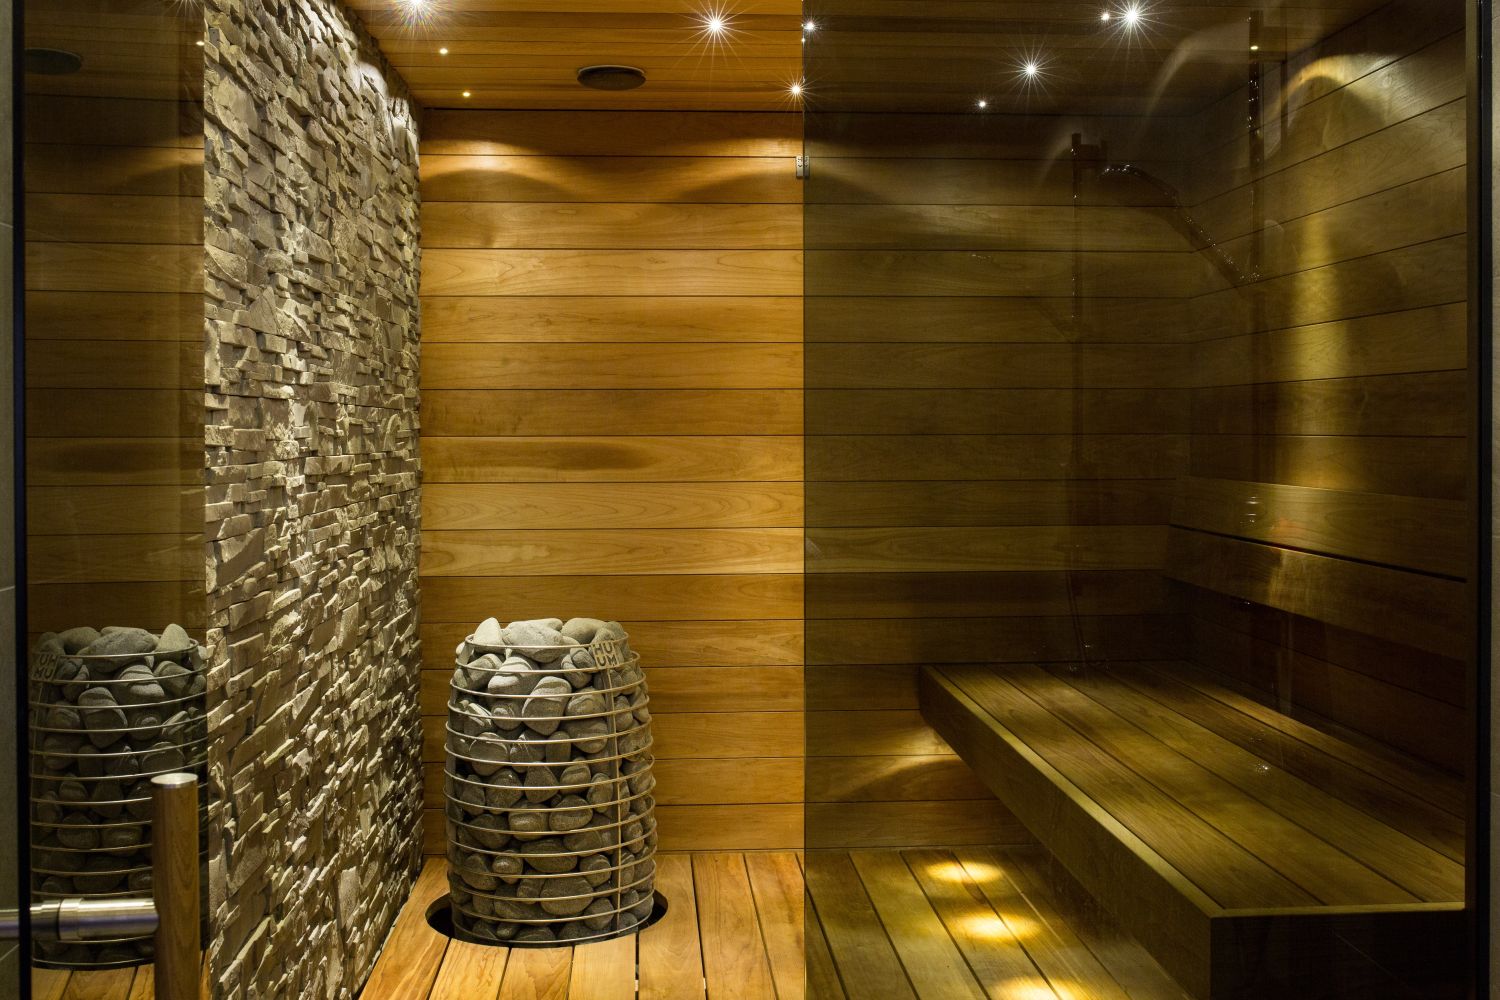  sauna w małej łazience 